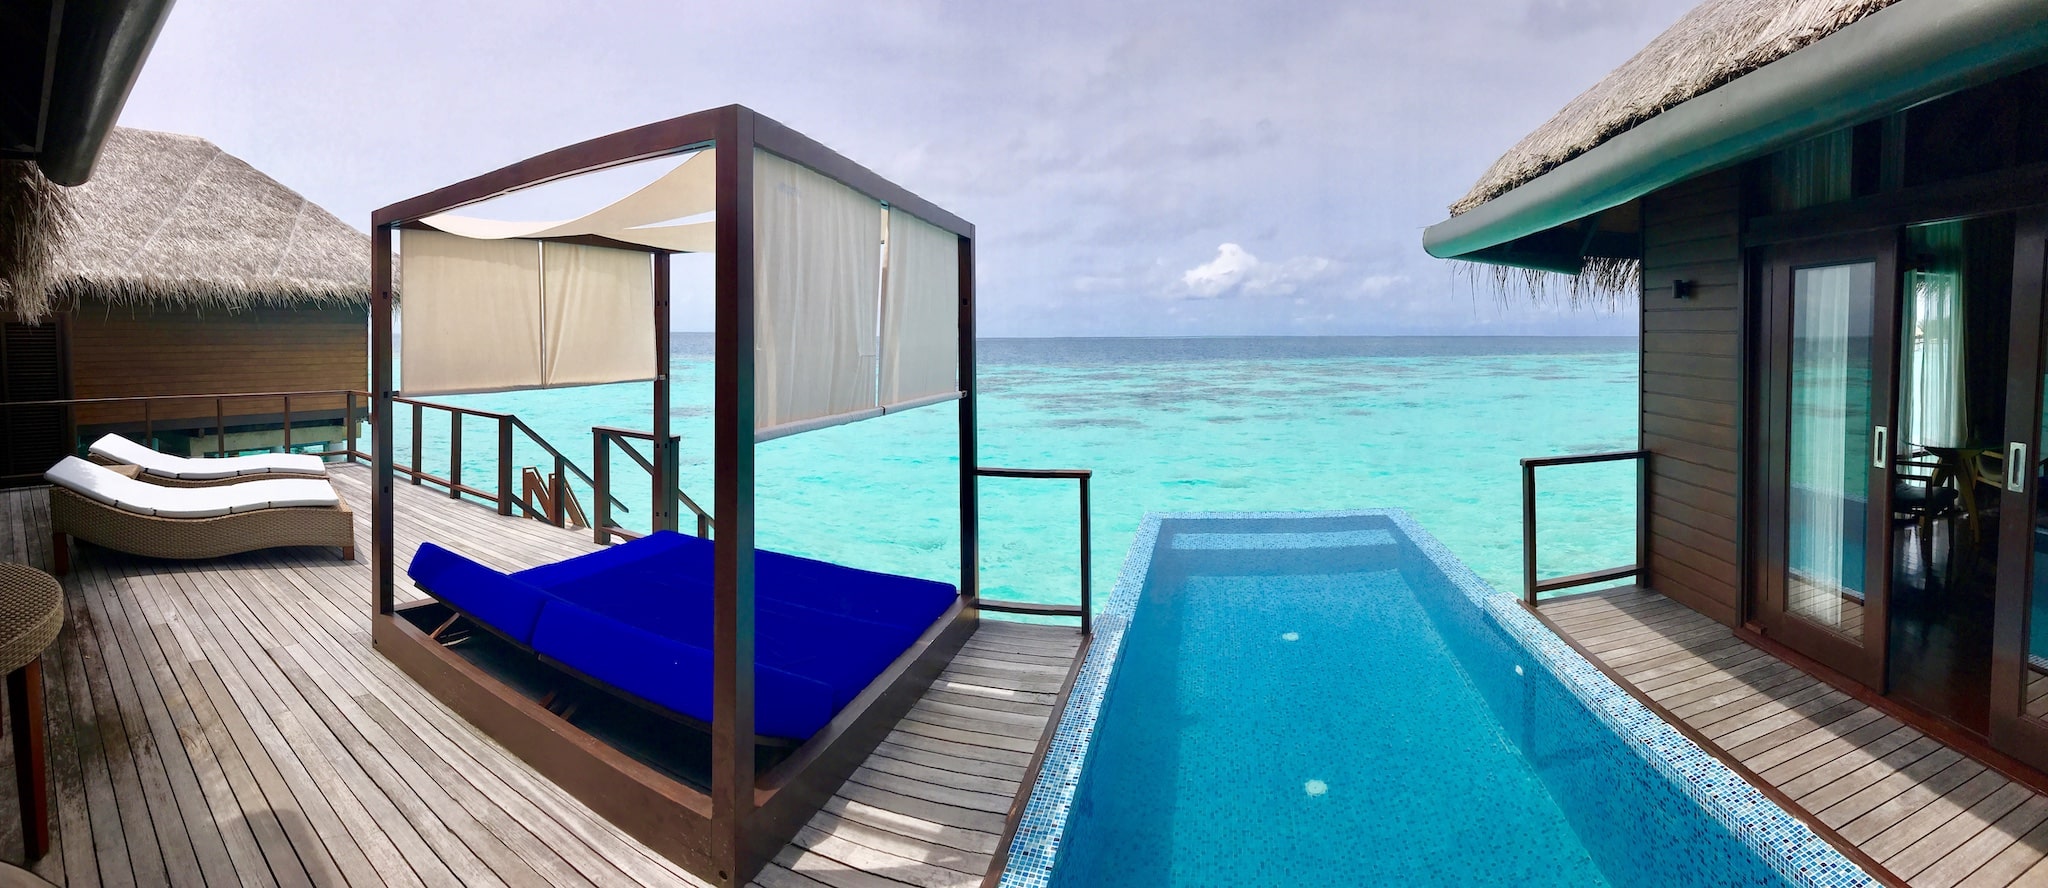 Water Villa einer Malediven-Insel: die Unterkünfte bieten Luxus pur. Foto: Sascha Tegtmeyer Reisebericht Malediven Tipps